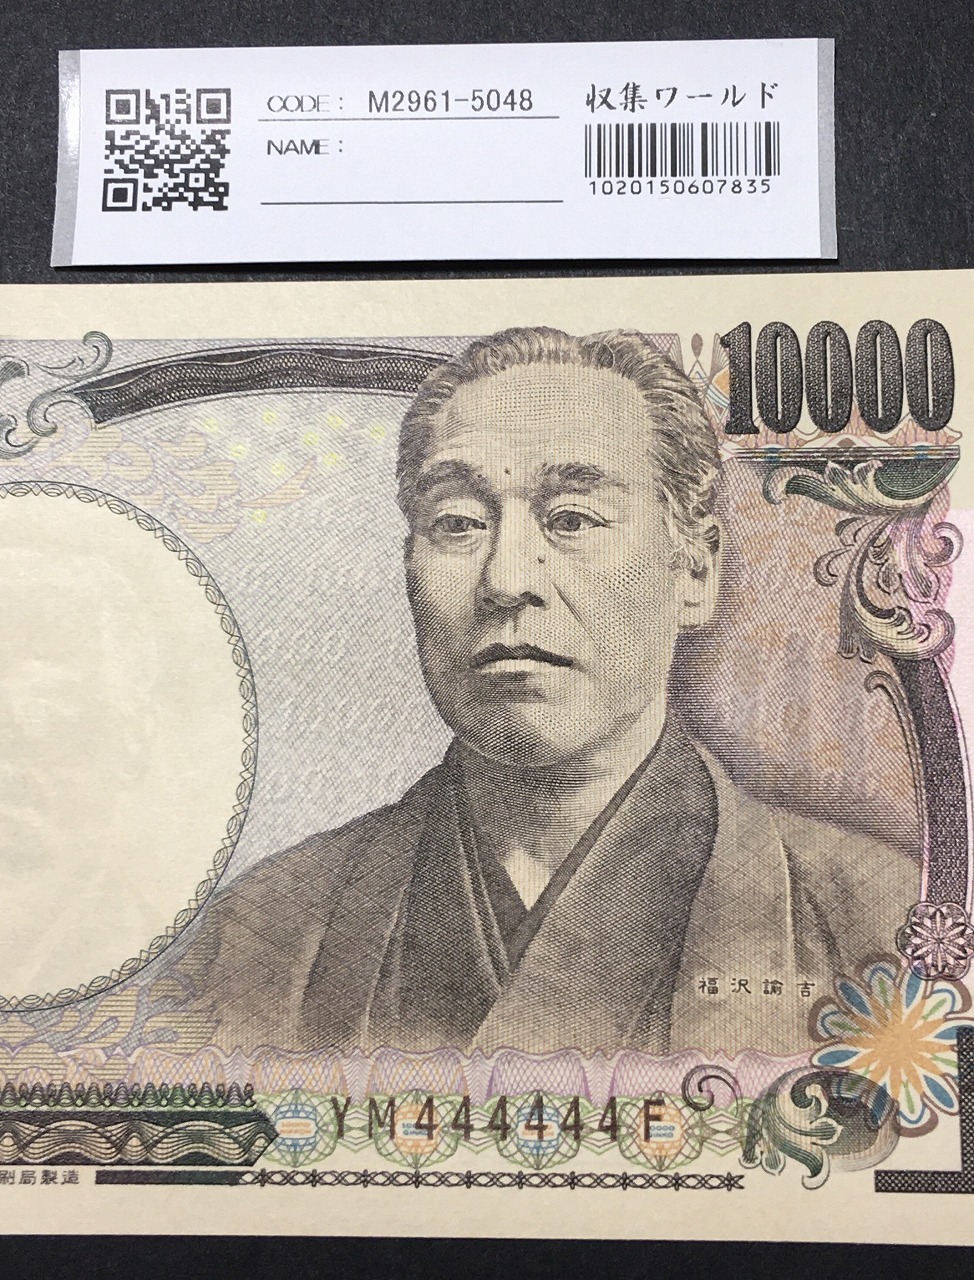 新福沢 1万円紙幣 国立印刷局 褐色 珍番 YM444444F 完未品